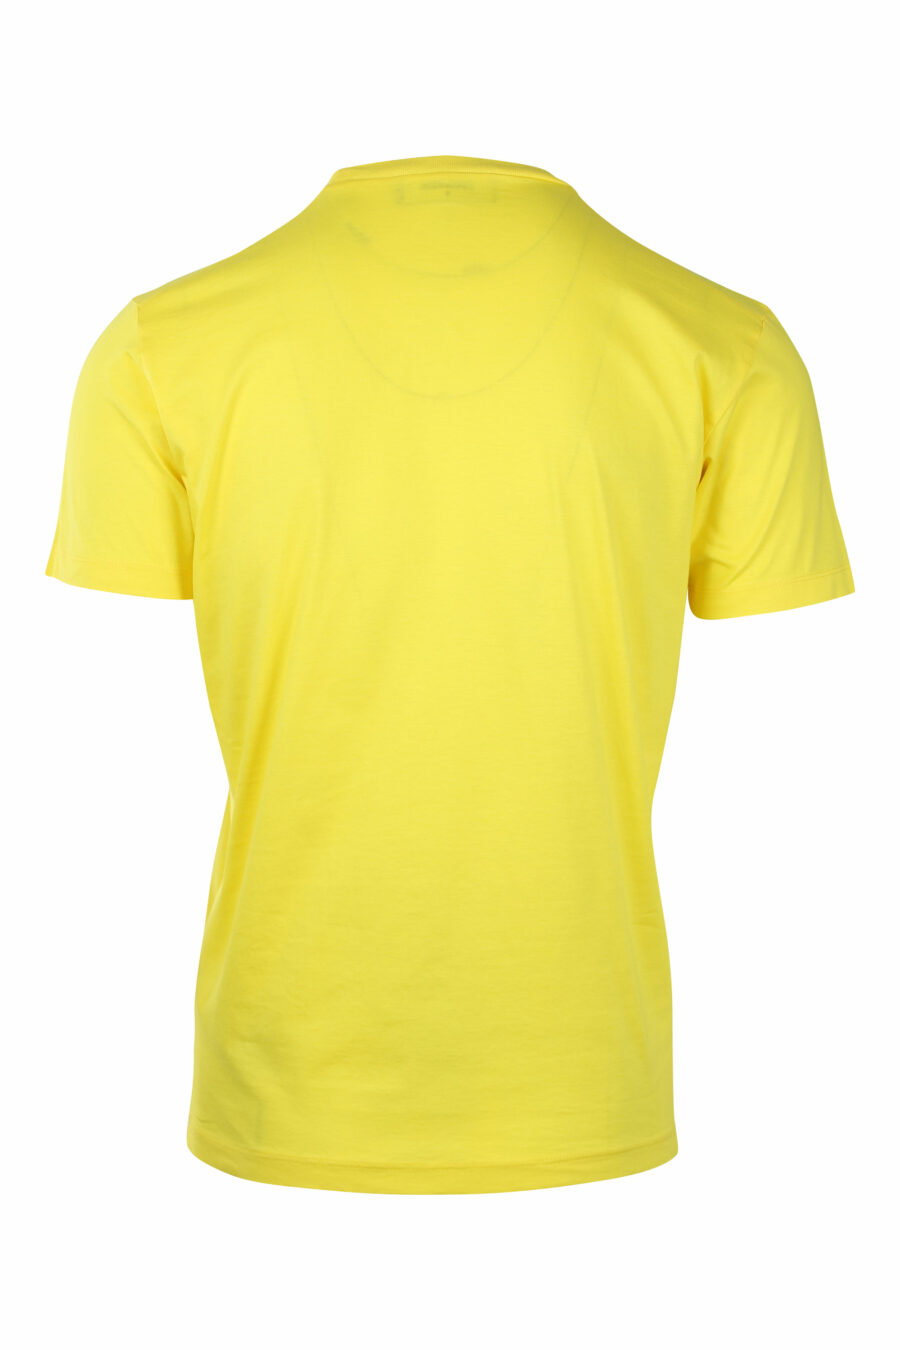 T-shirt jaune avec double logo "icon" blanc - IMG 1406